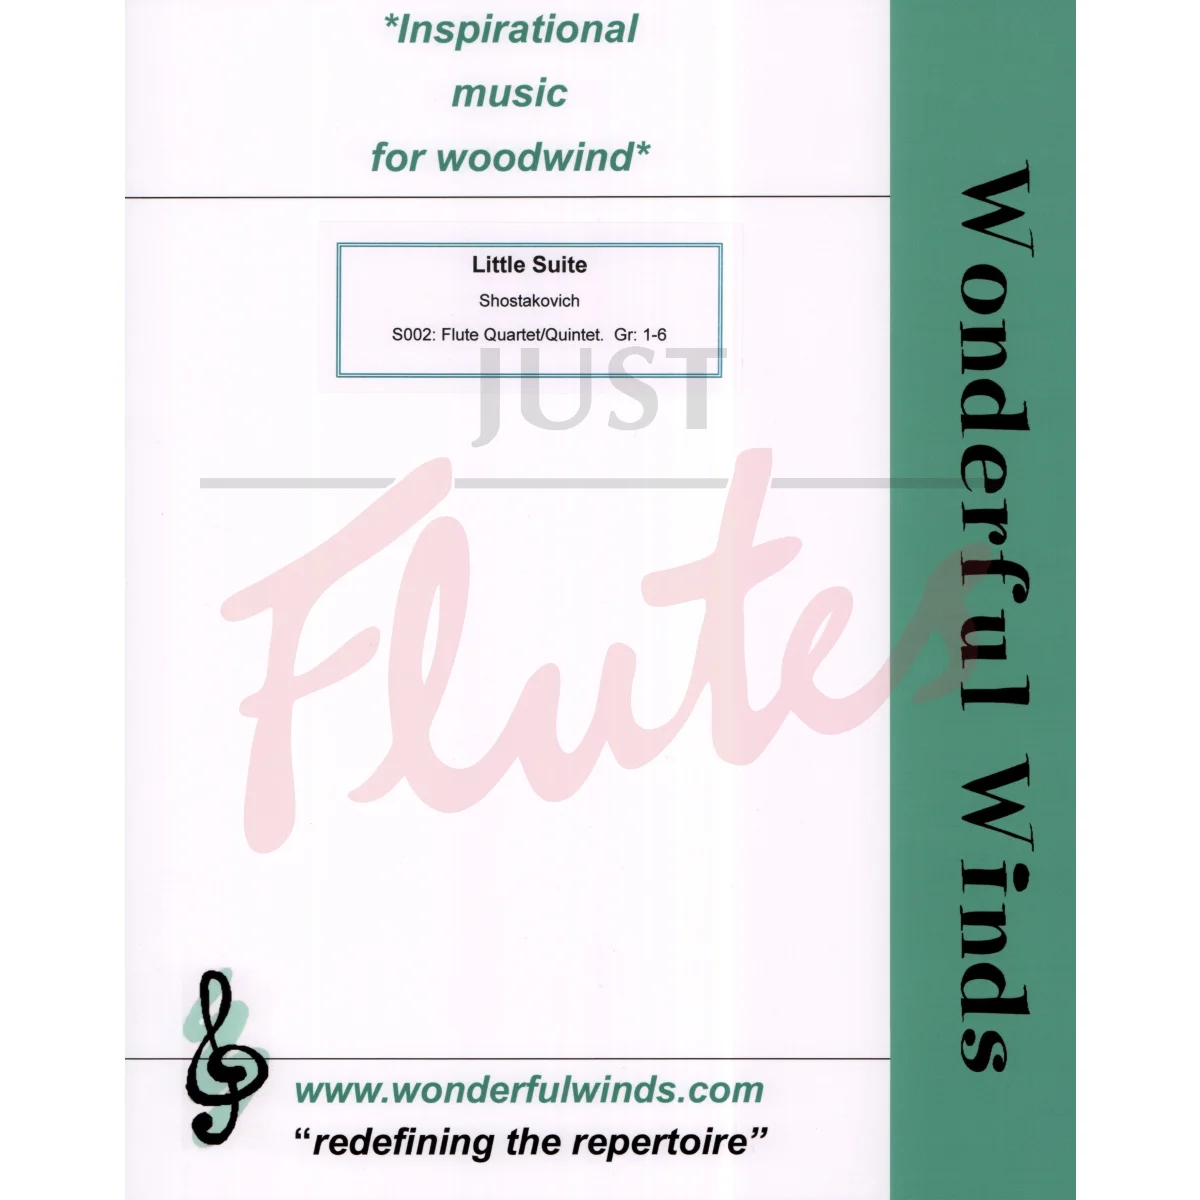 Little Suite for Flute Quartet/Quintet